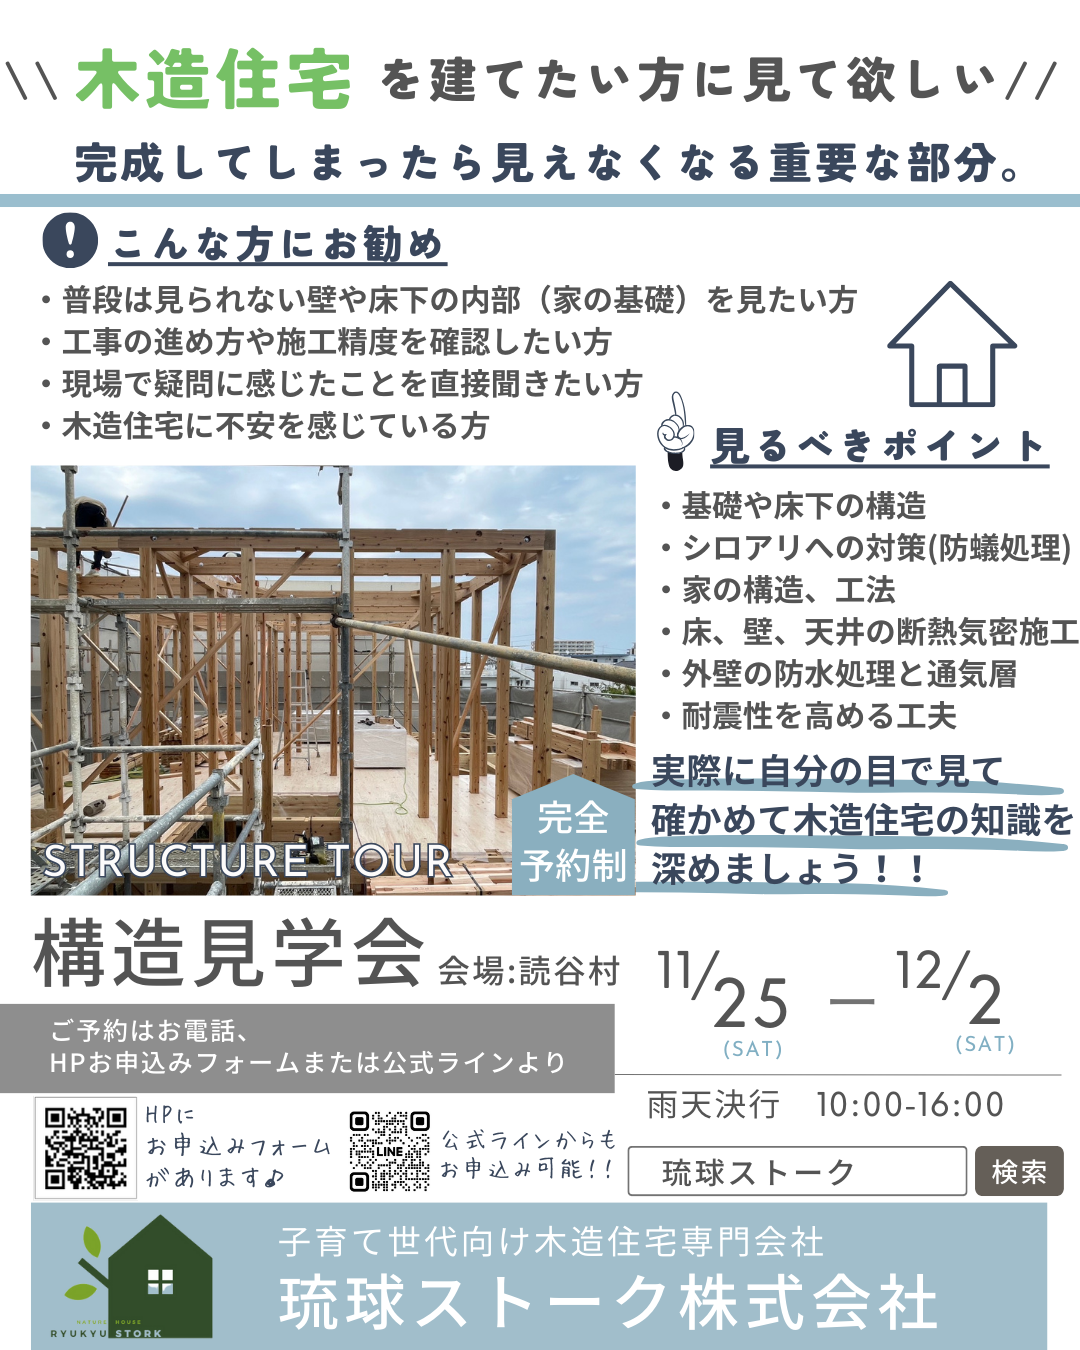 11月25日～読谷村構造見学会開催